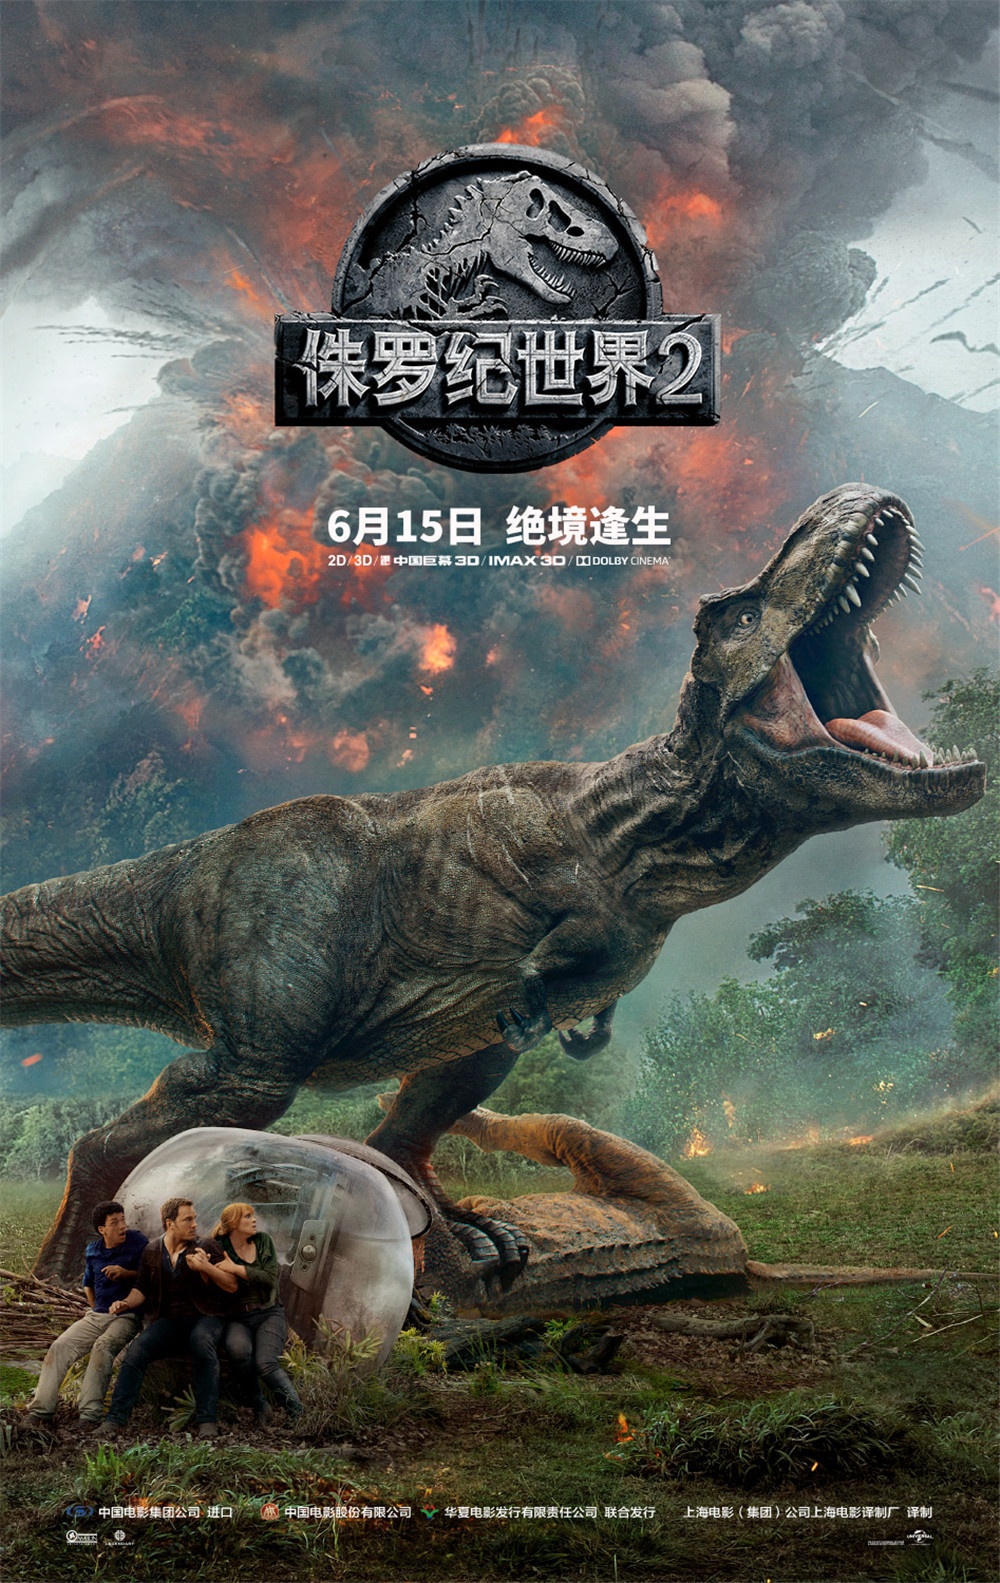 《侏罗纪世界2》曝幕后特辑 主创缔造恐龙新世界